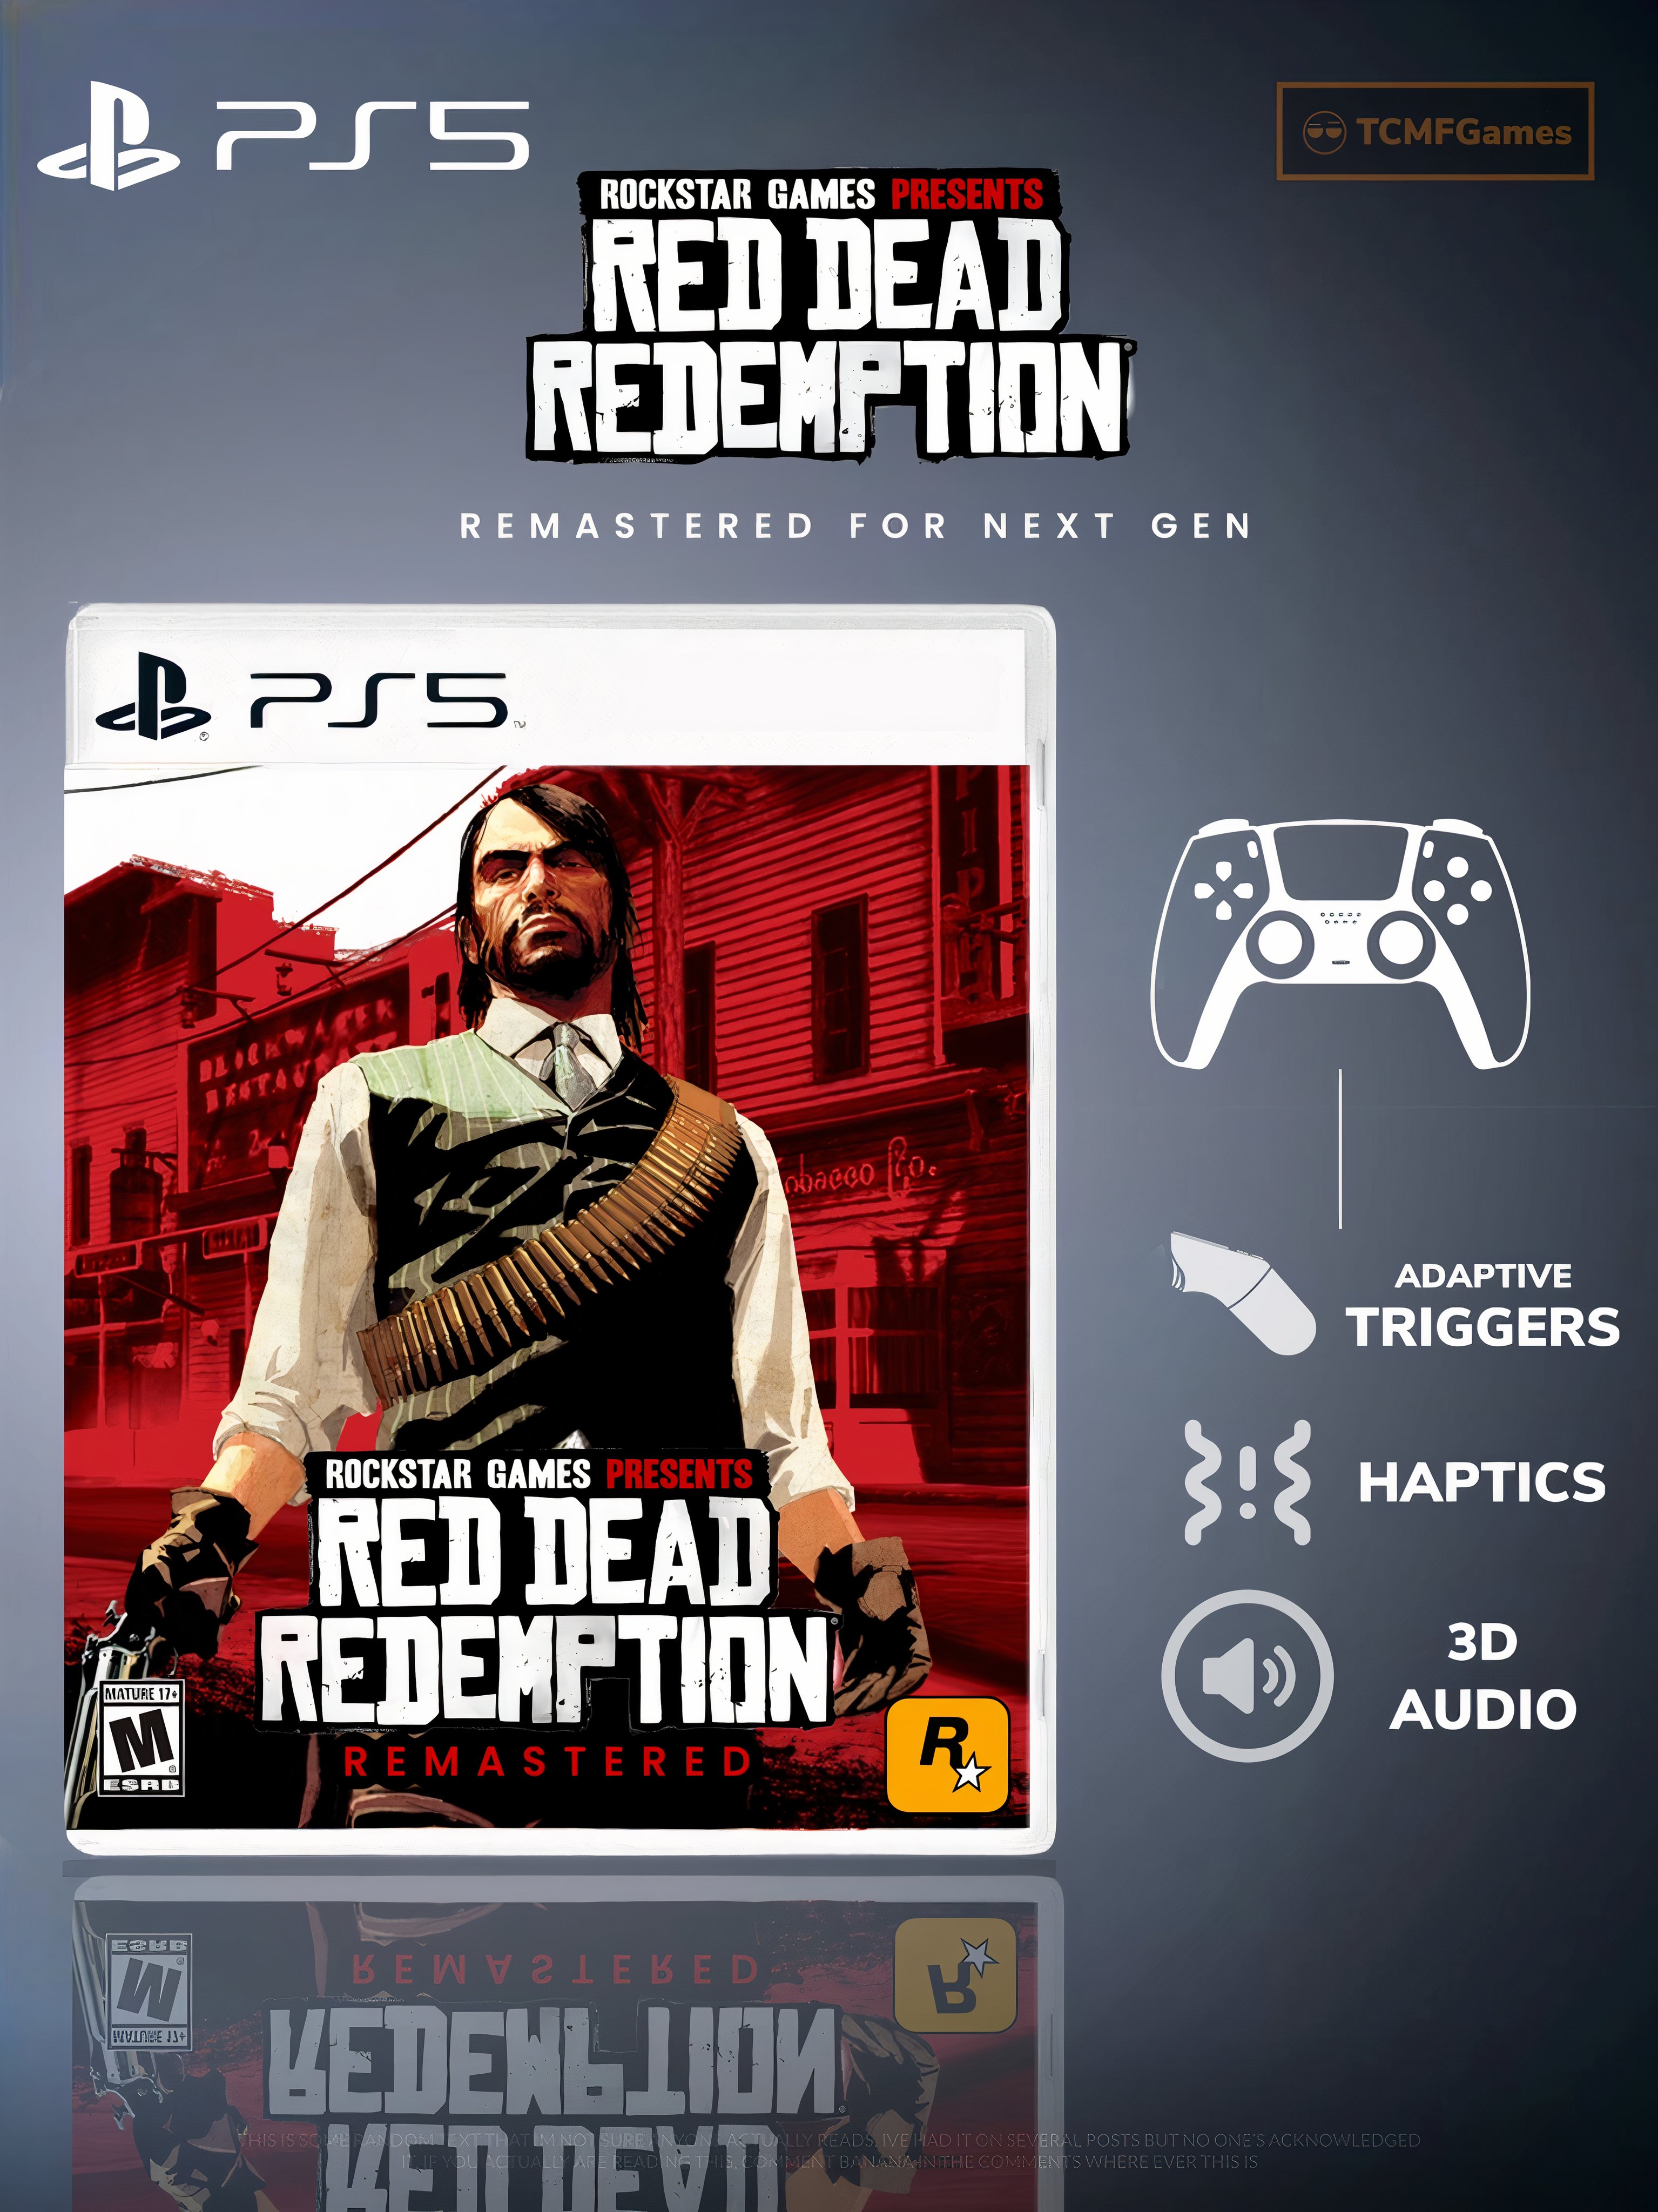 Red Dead Redemption Remaster